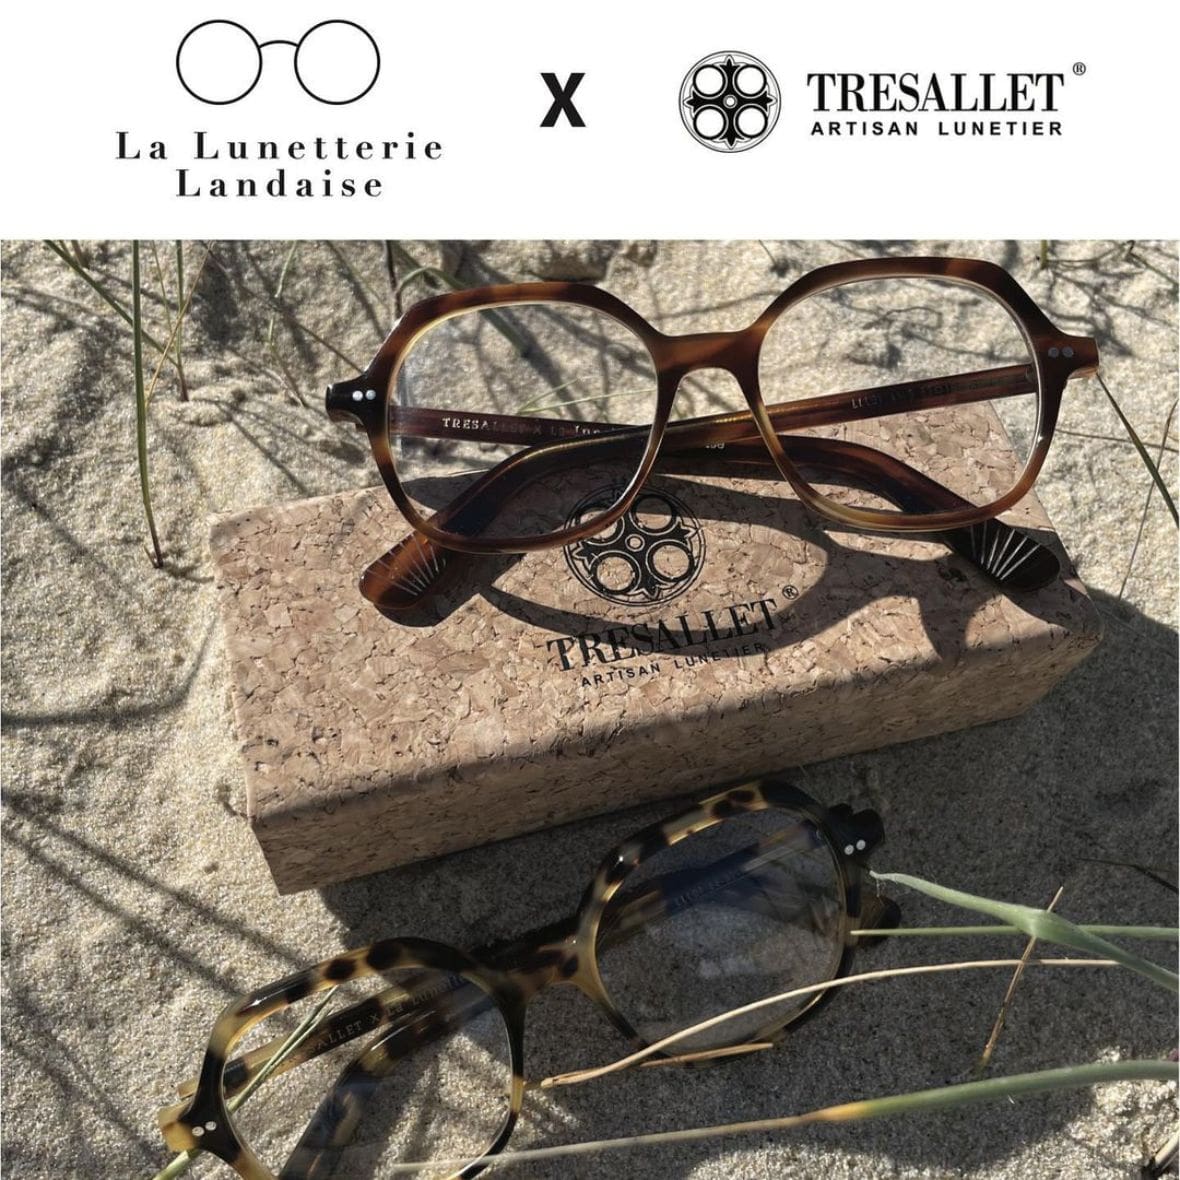 la-lunetterie-landaise-opticien-marques-locales-economie-solidaire-tresallet-bayonne